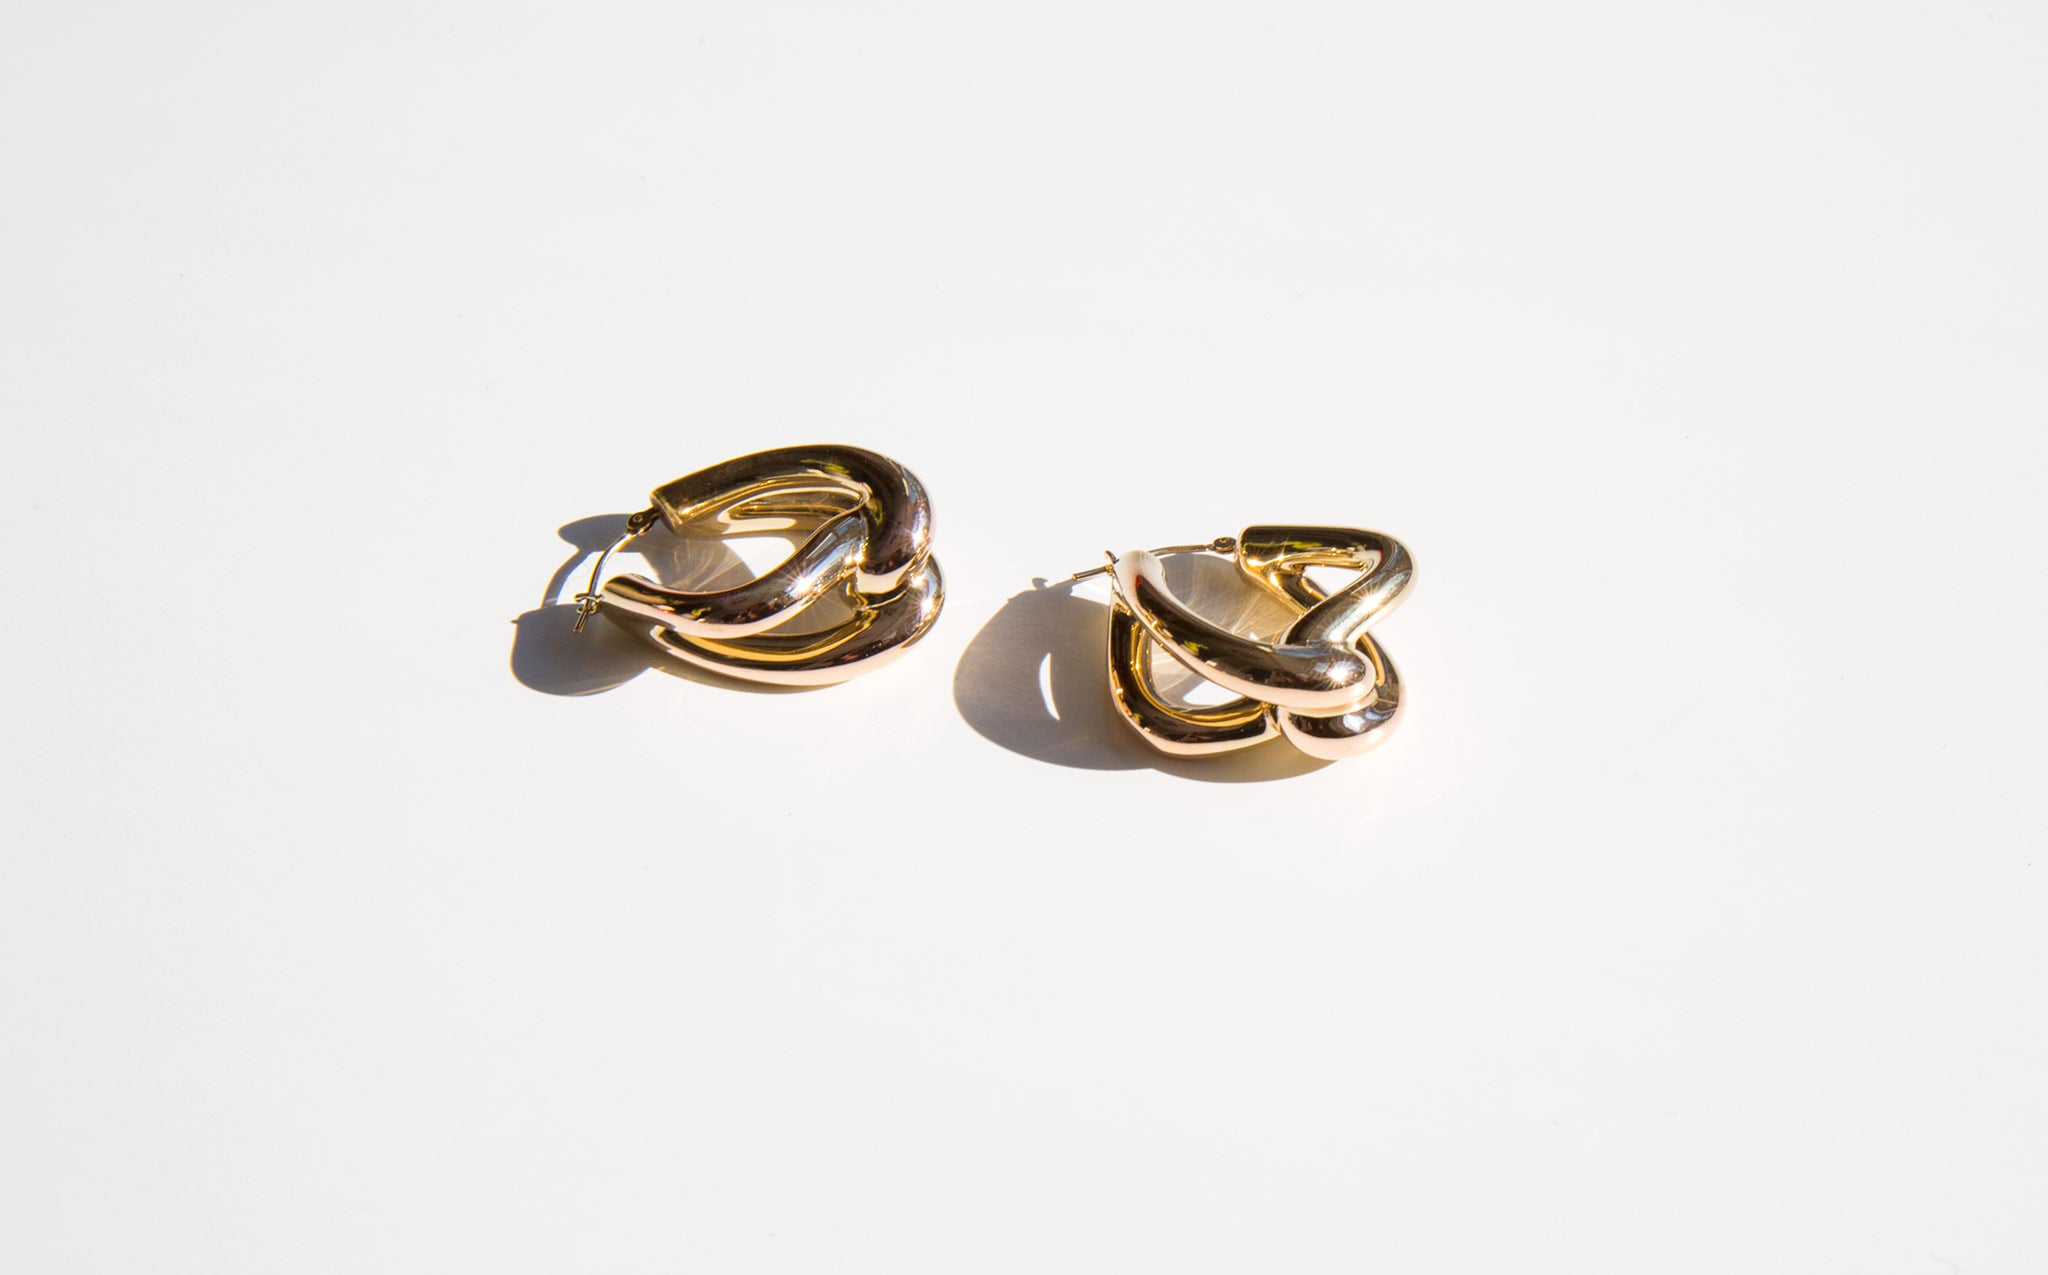 The Golden Knot Earrings